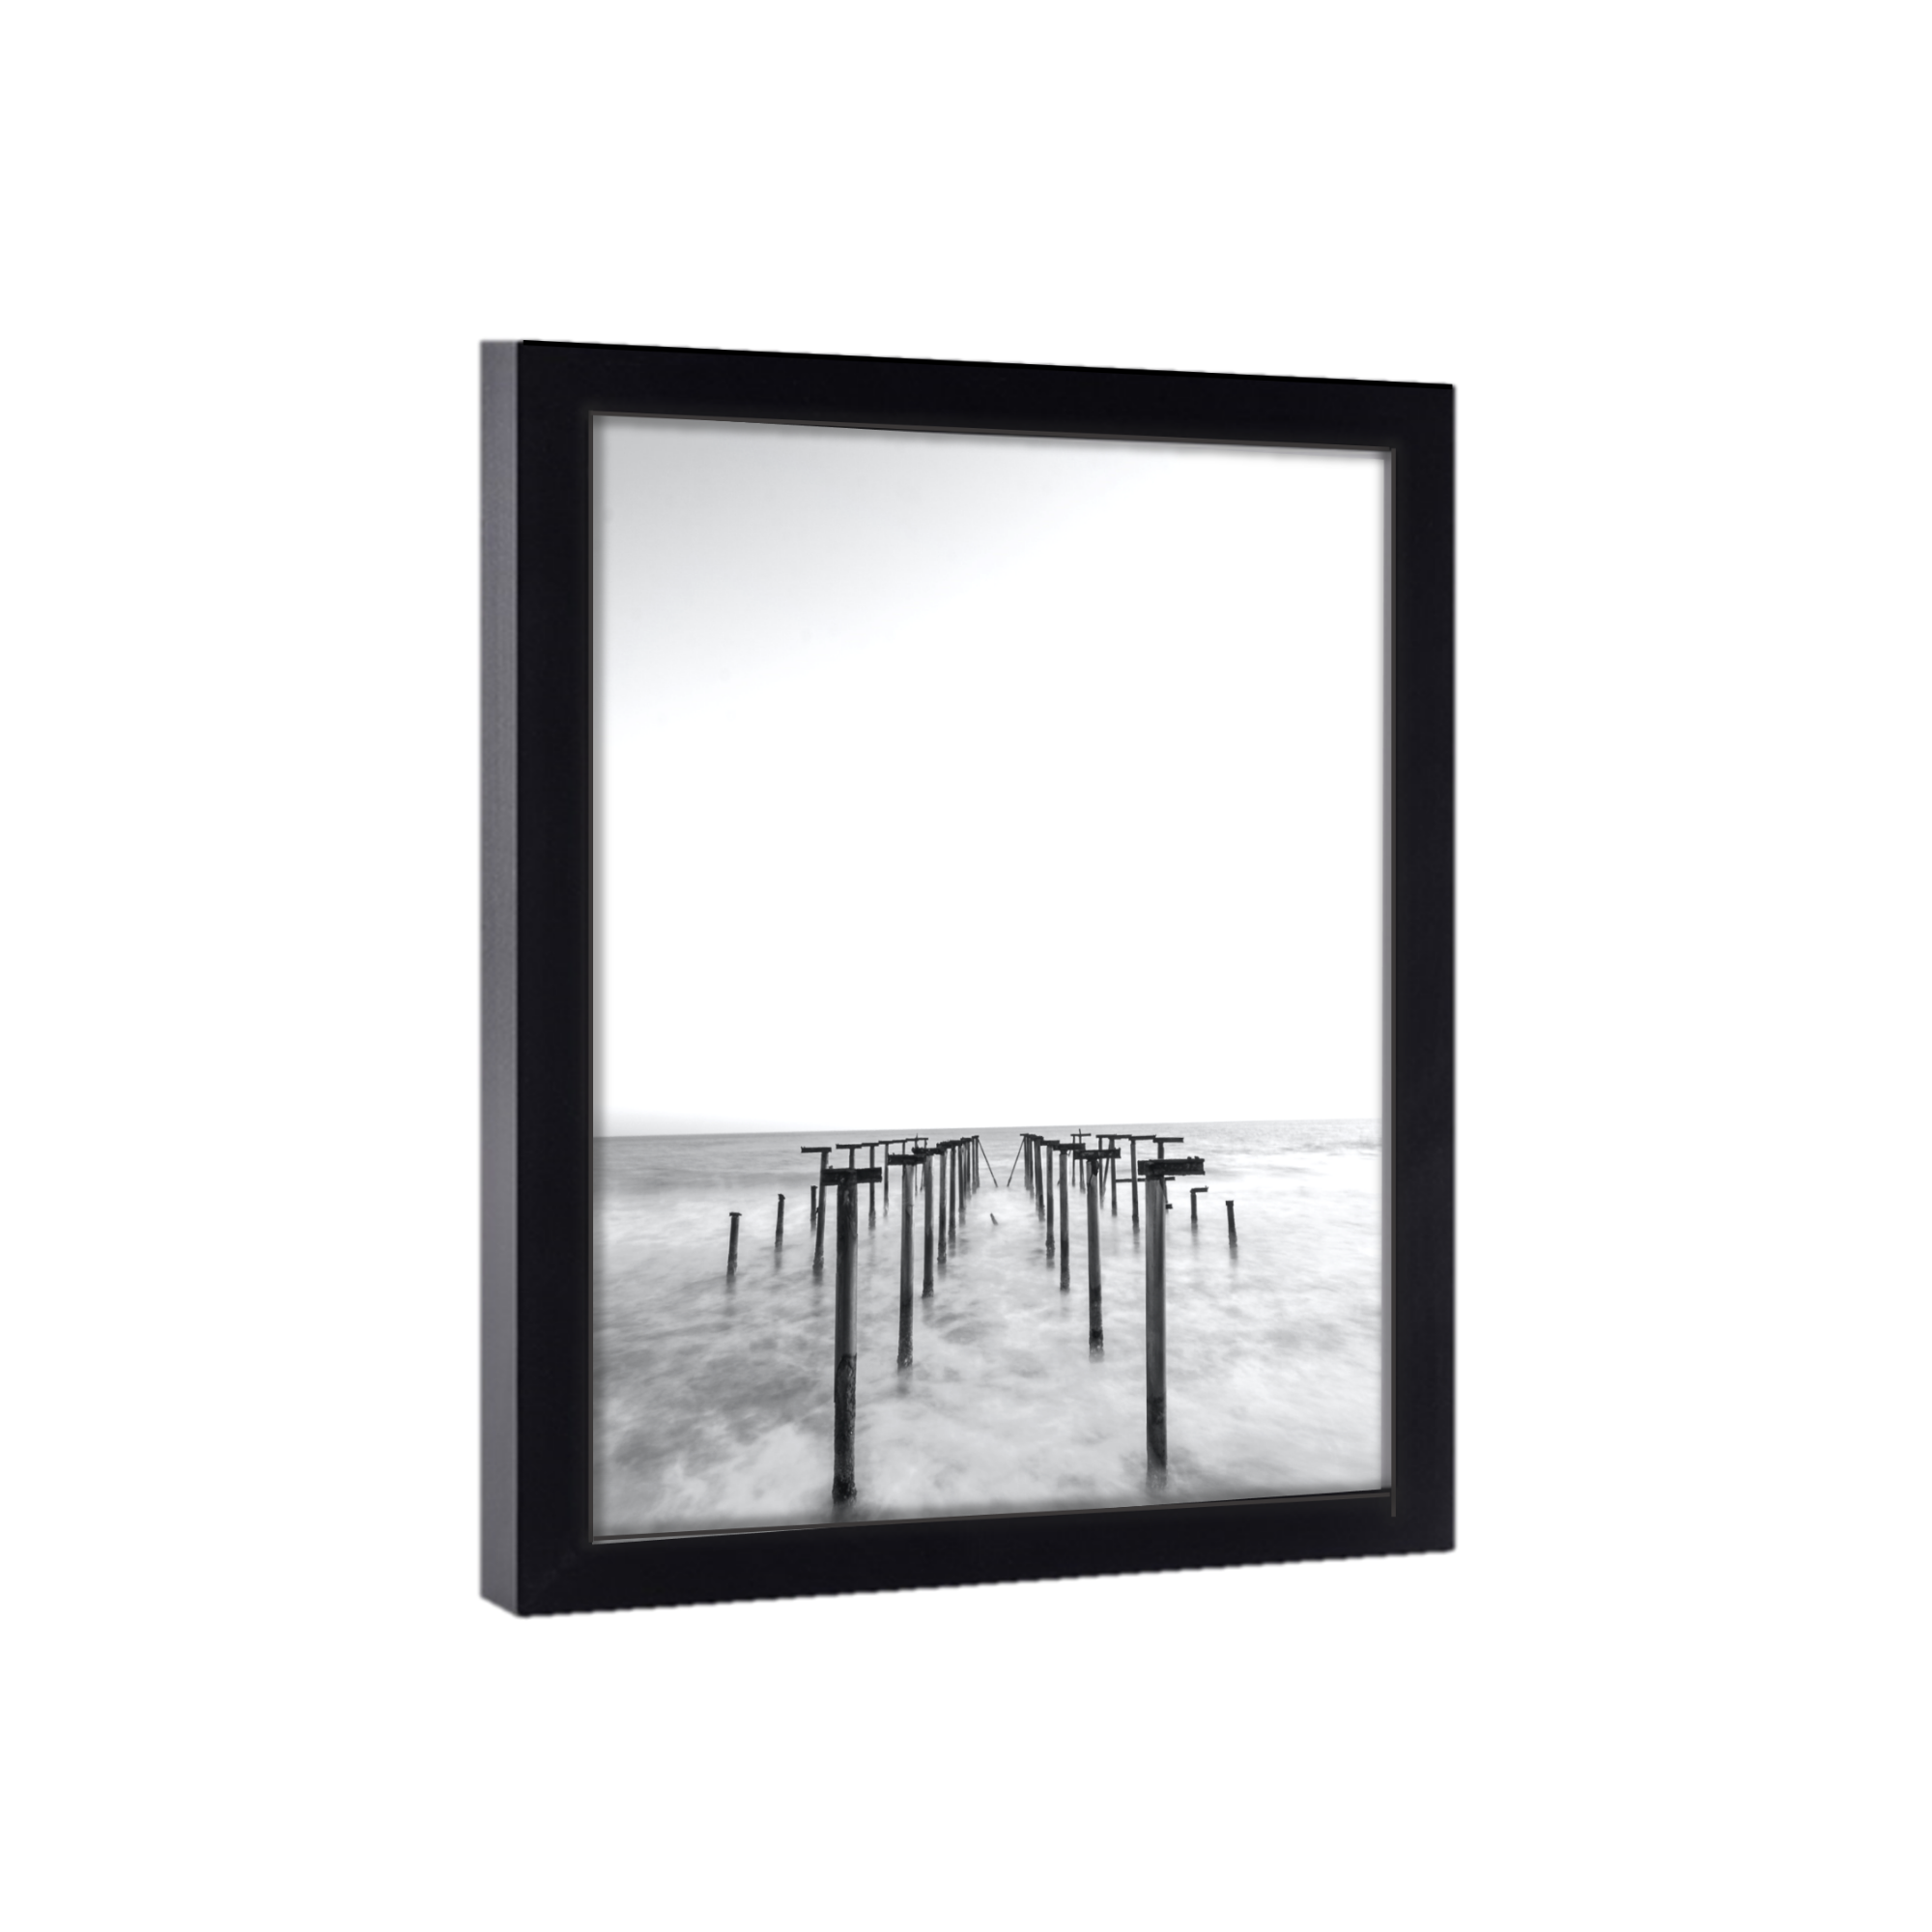 Wood Gallery Frames, 18x18